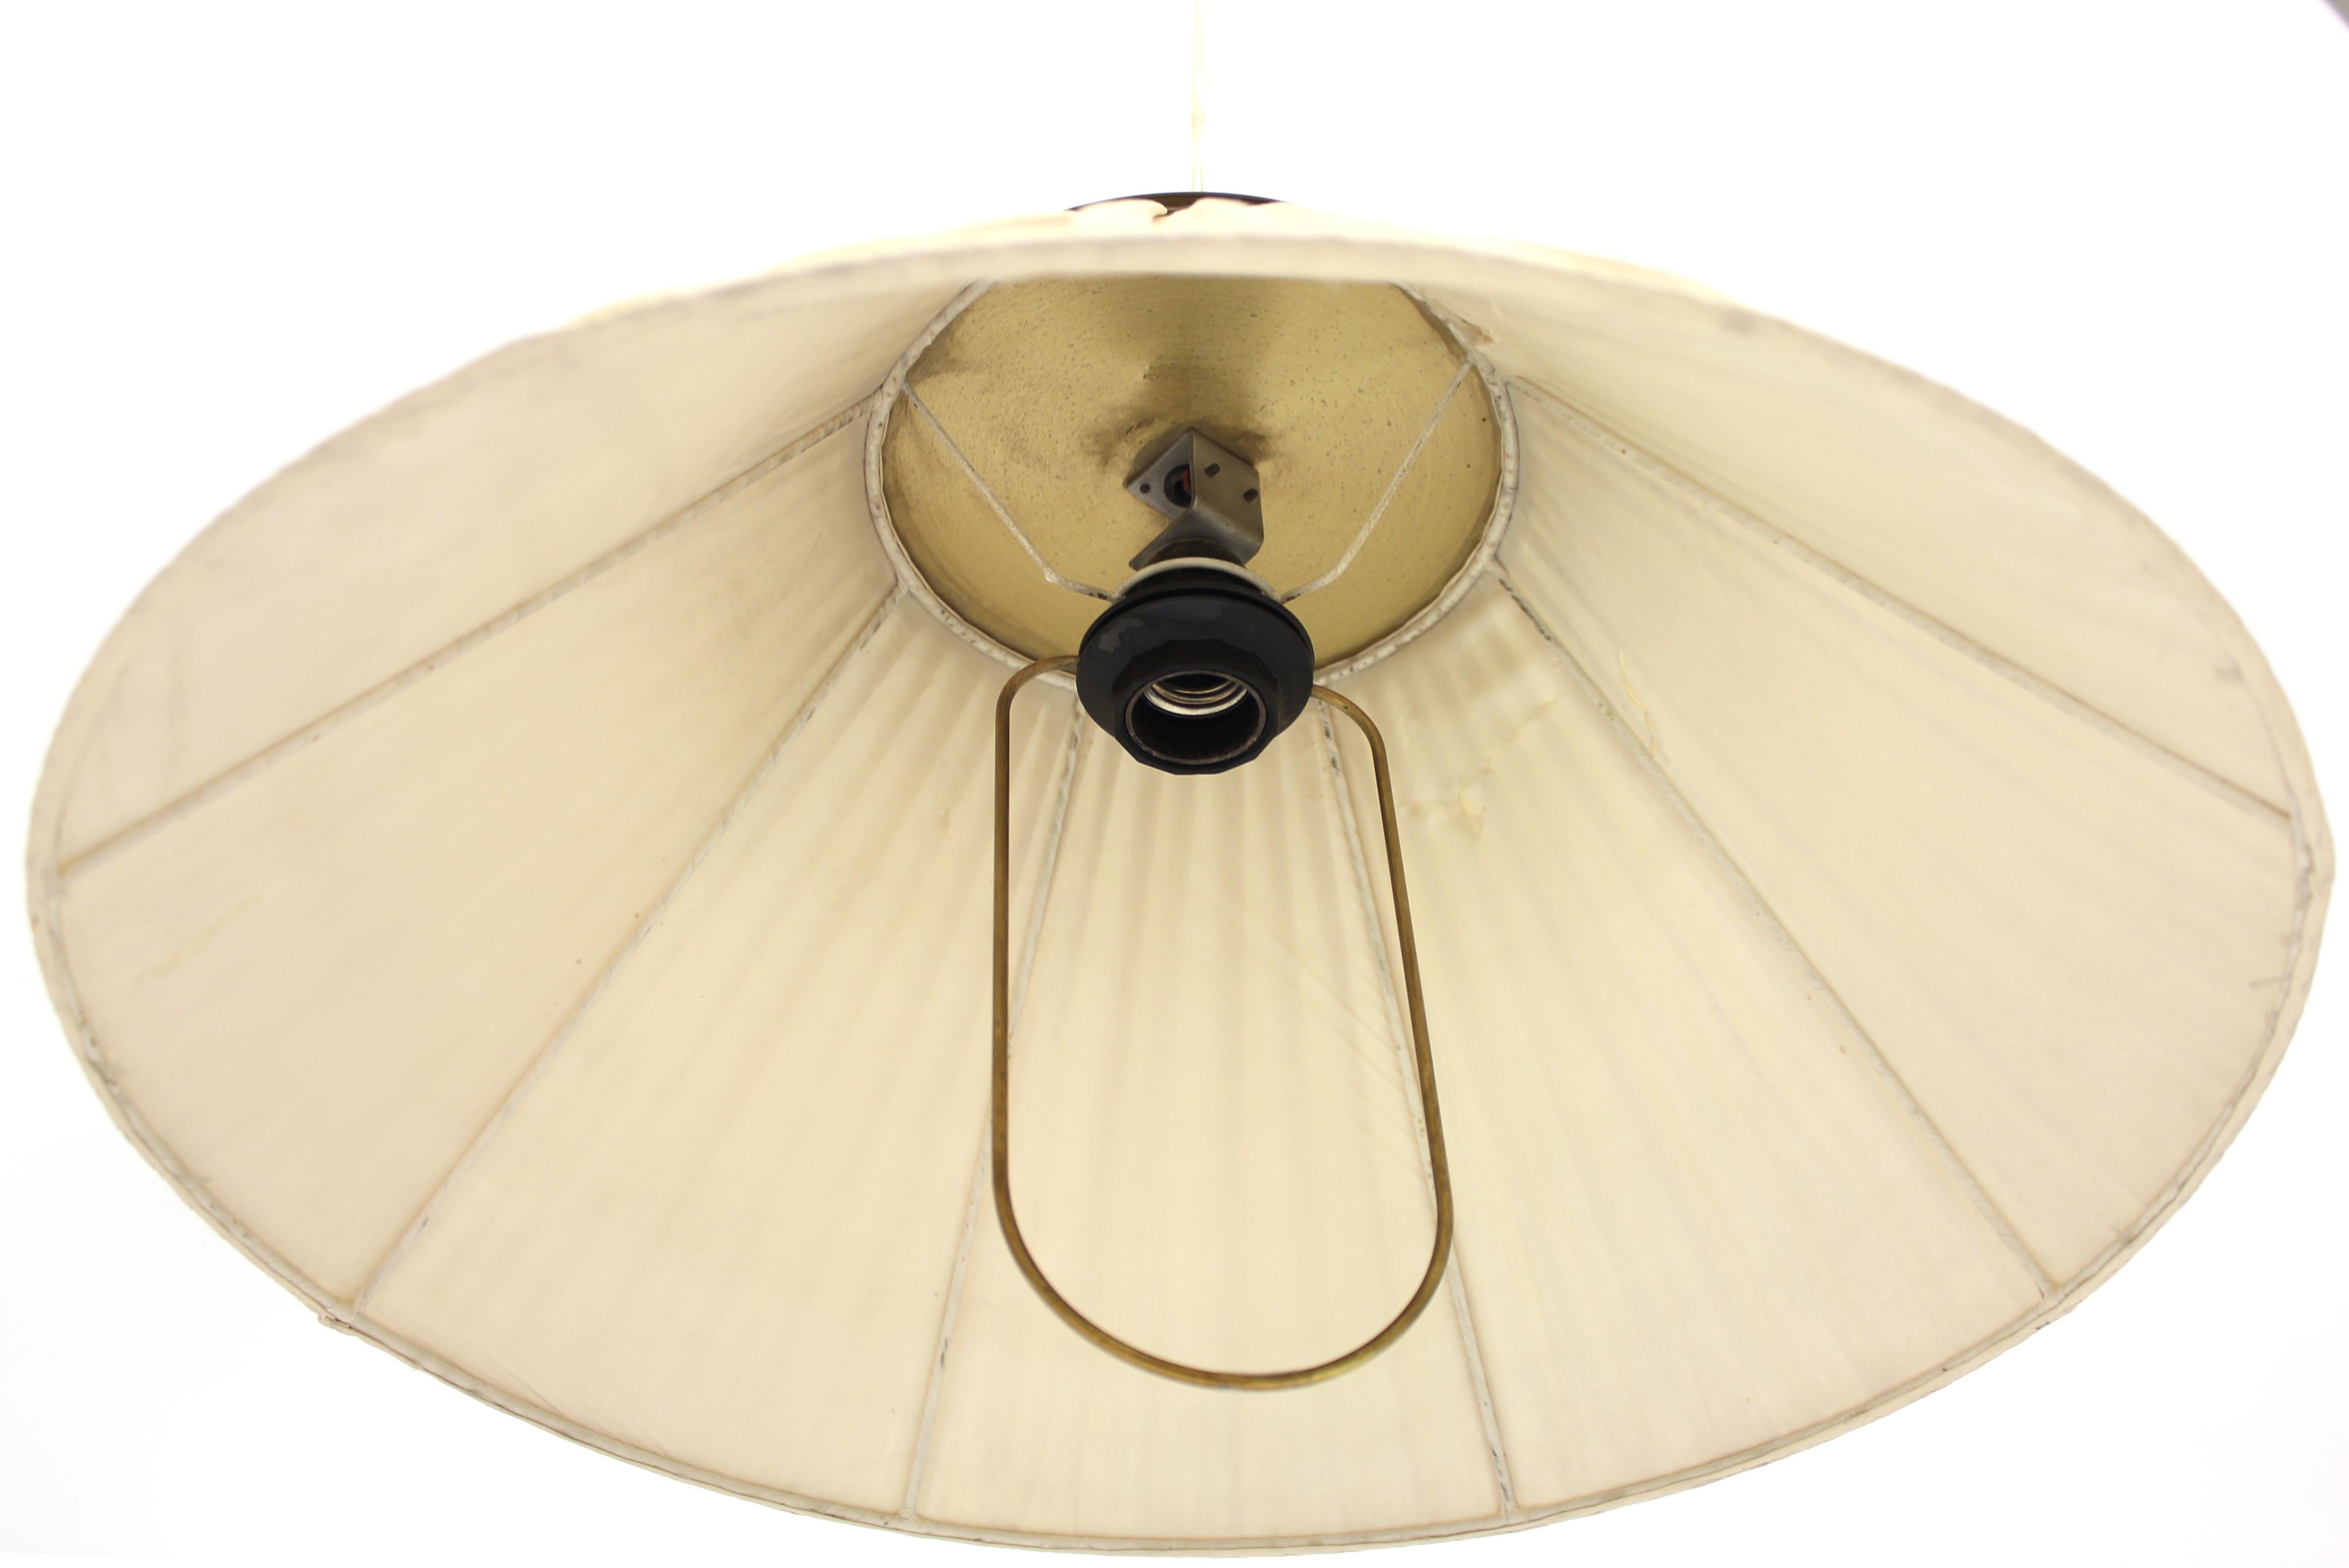 Mid-20th Century Rare Model 1844 Ceiling Lamp by Josef Frank for Svenskt Tenn, 1950s